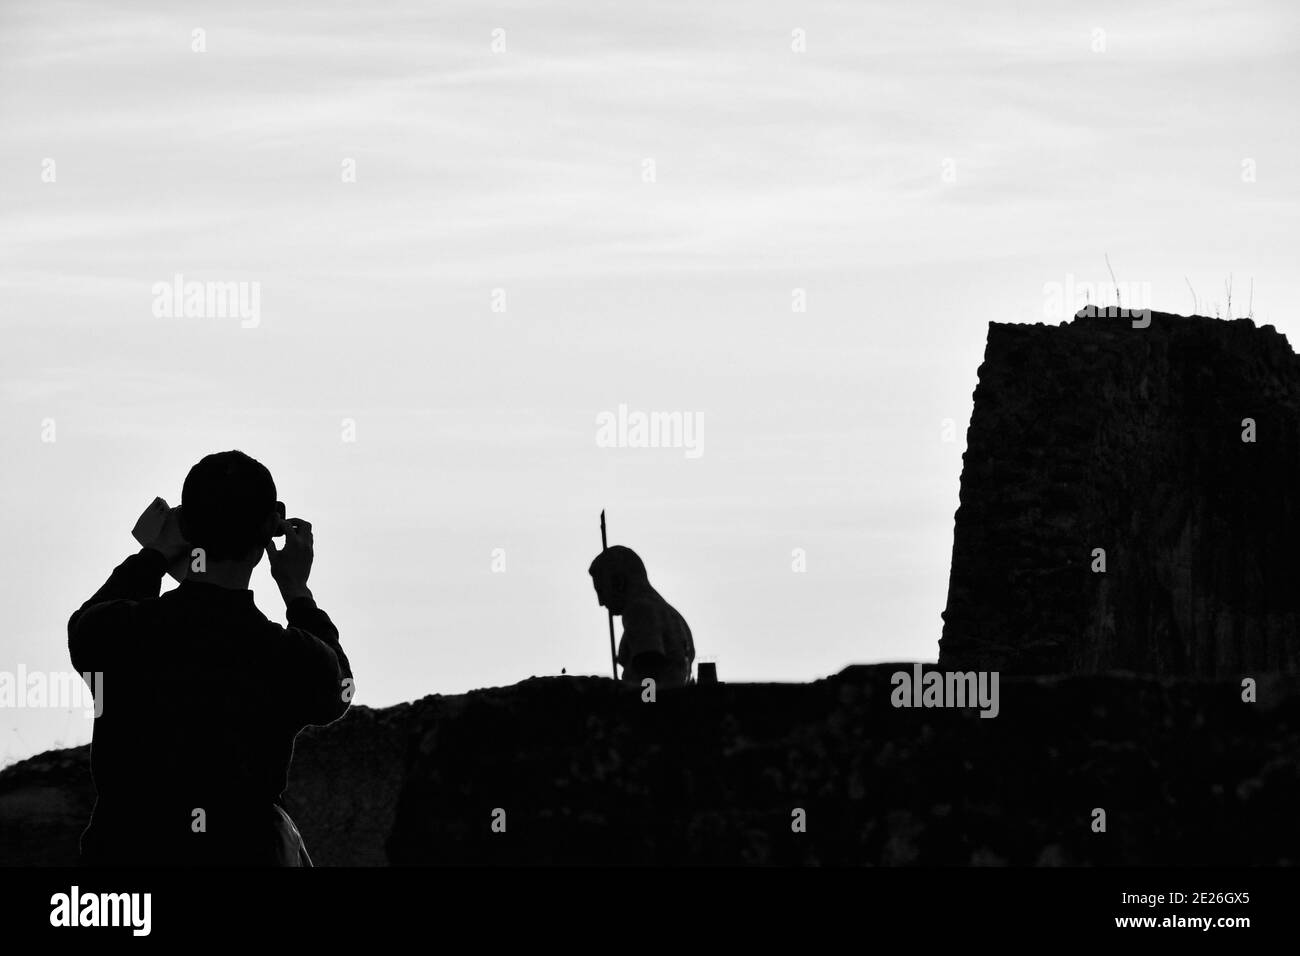 Ruinen von Pompeji. Junge Tourist mit Karte in der Hand Foto mit Smartphone von Pompeji Ruinen mit zerstörten Wand und Krieger Statue. Schwarzweißfoto. Stockfoto